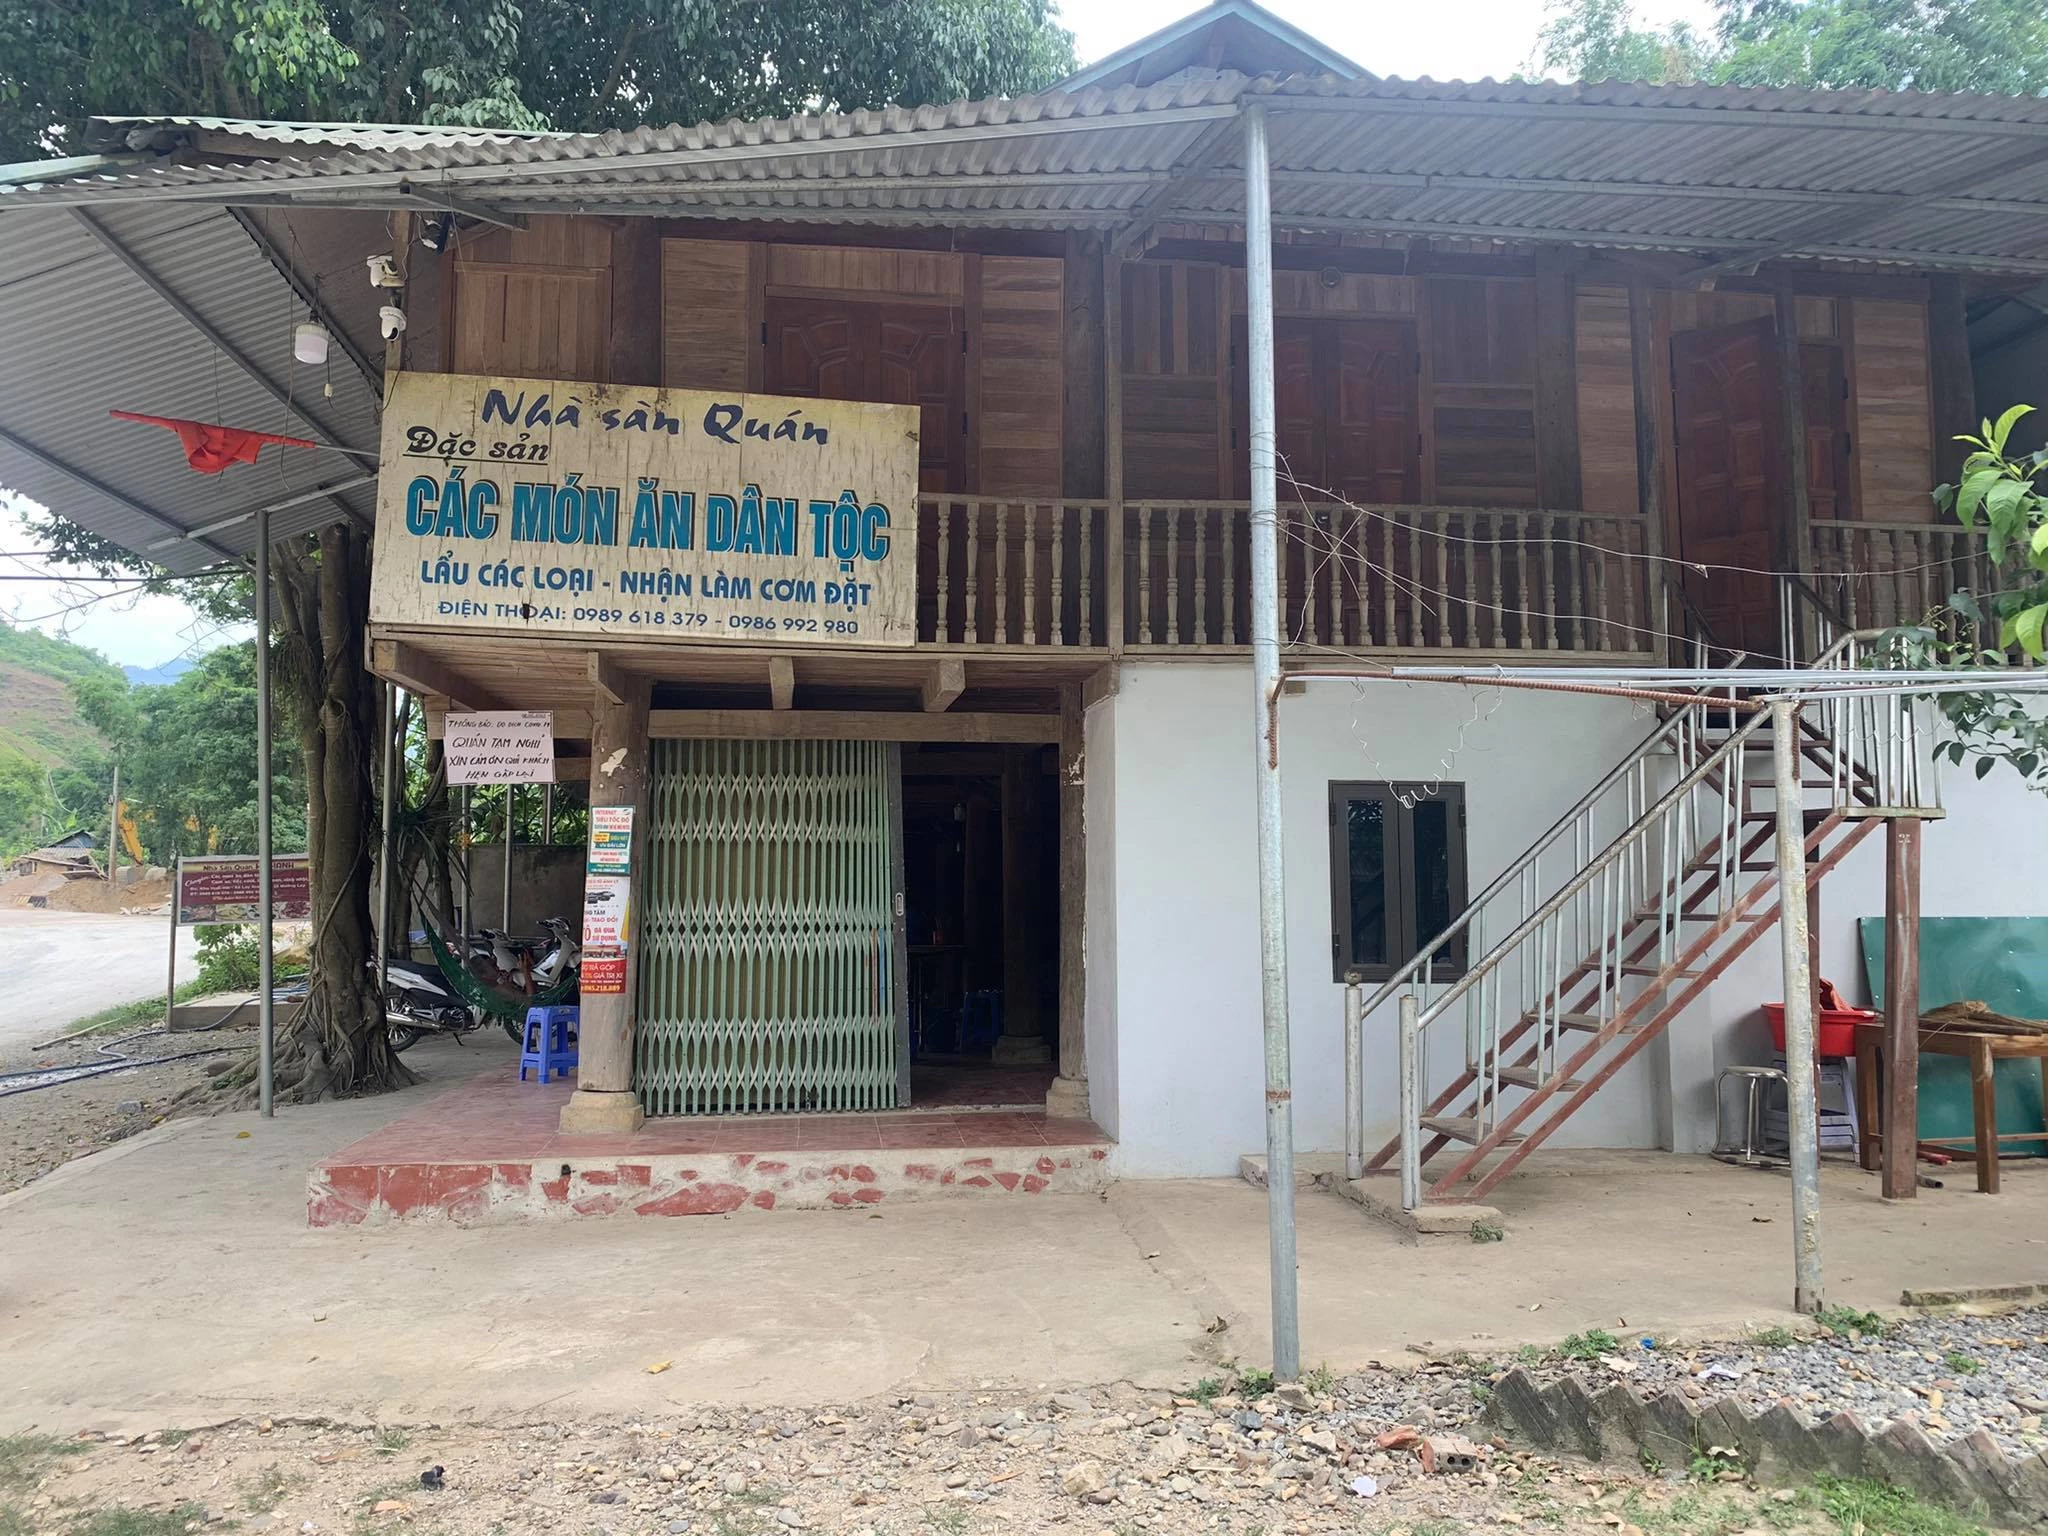 Nhà sàn Quán ở thị xã Mường Lay, tỉnh Điện Biên đã tự nguyện đóng cửa phòng, chống dịch.